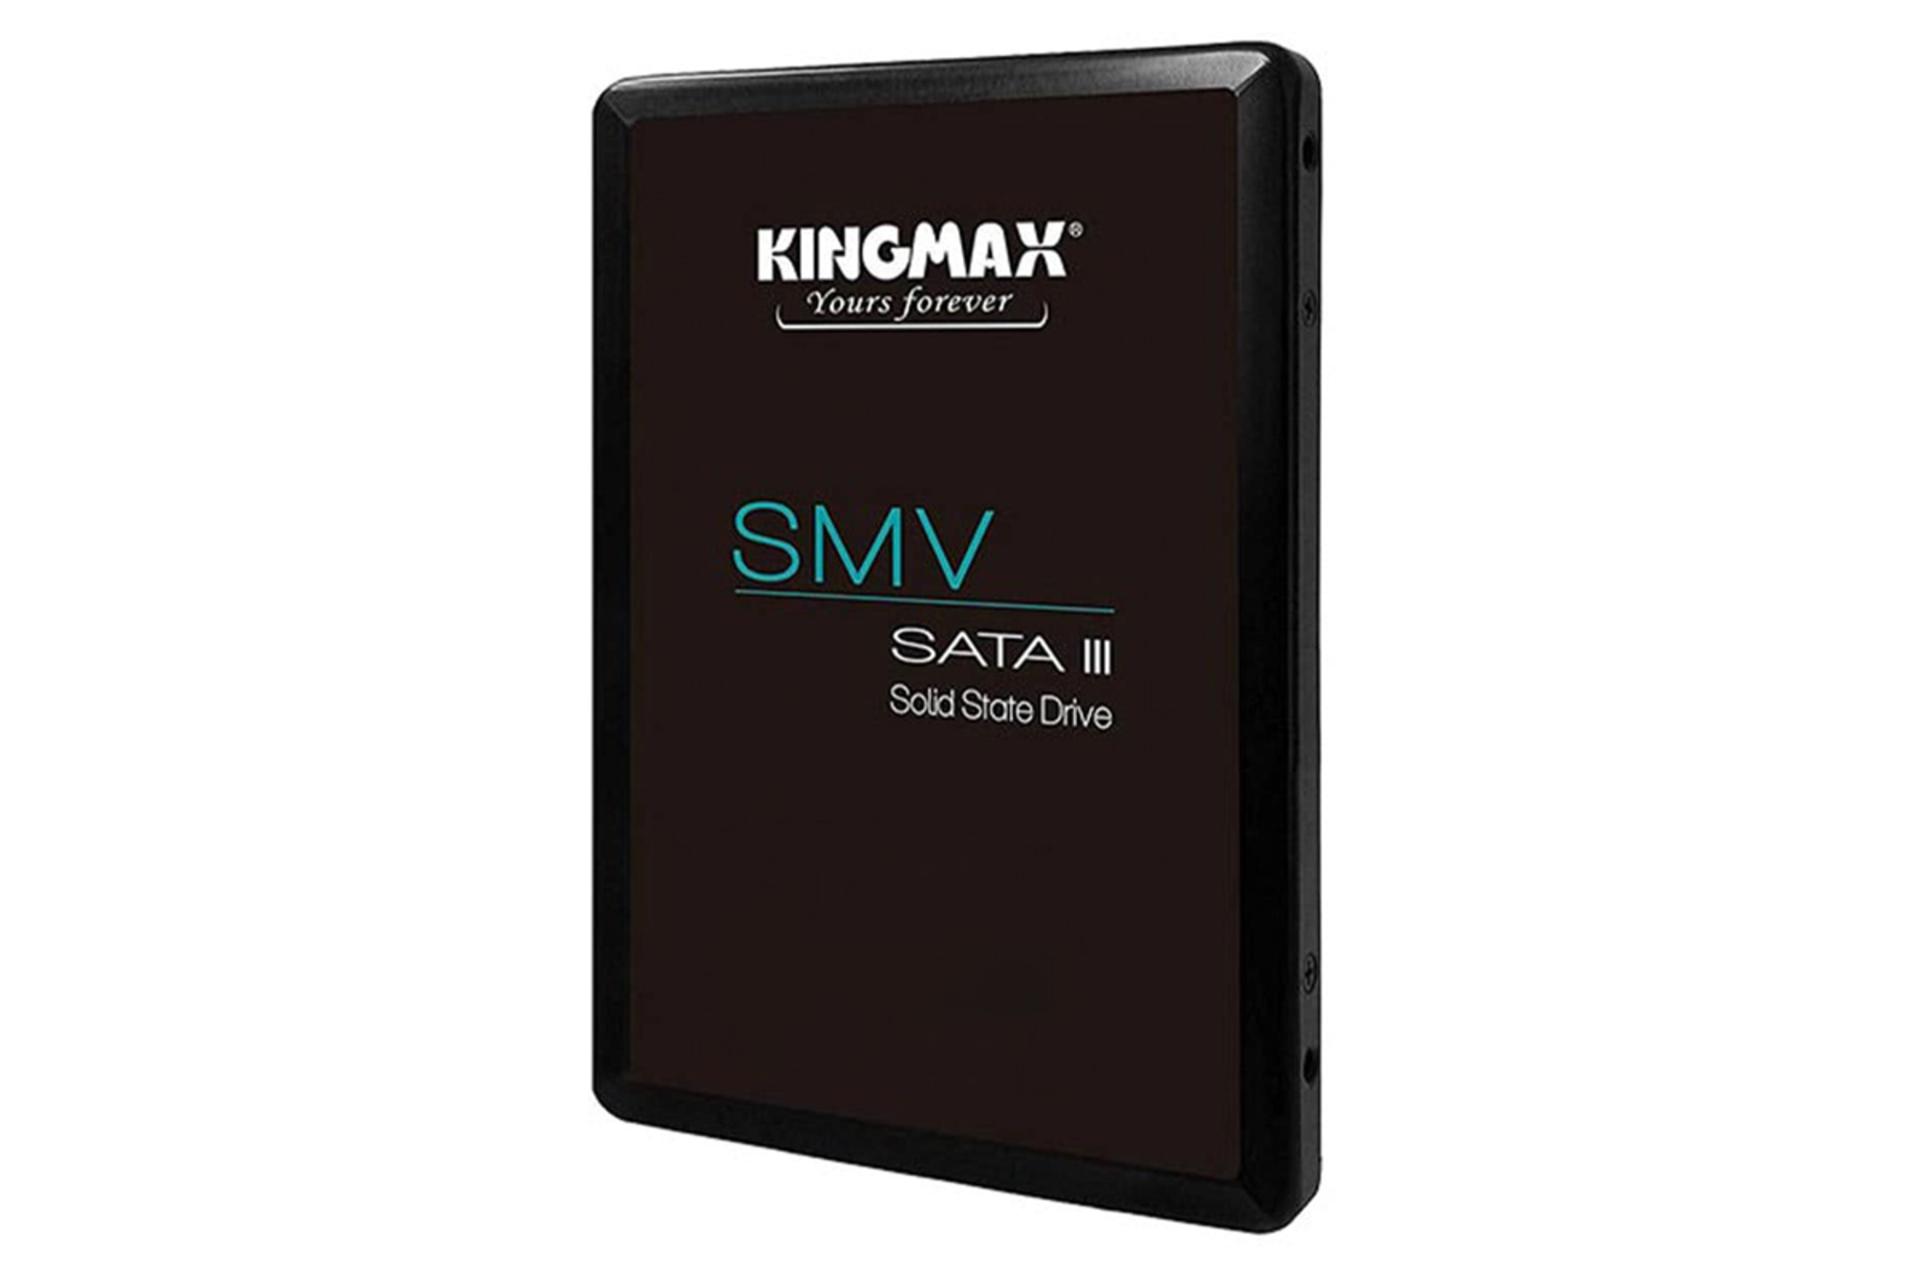 ابعاد و اندازه اس اس دی کینگ مکس SMV SATA 2.5 Inch ظرفیت 512 گیگابایت